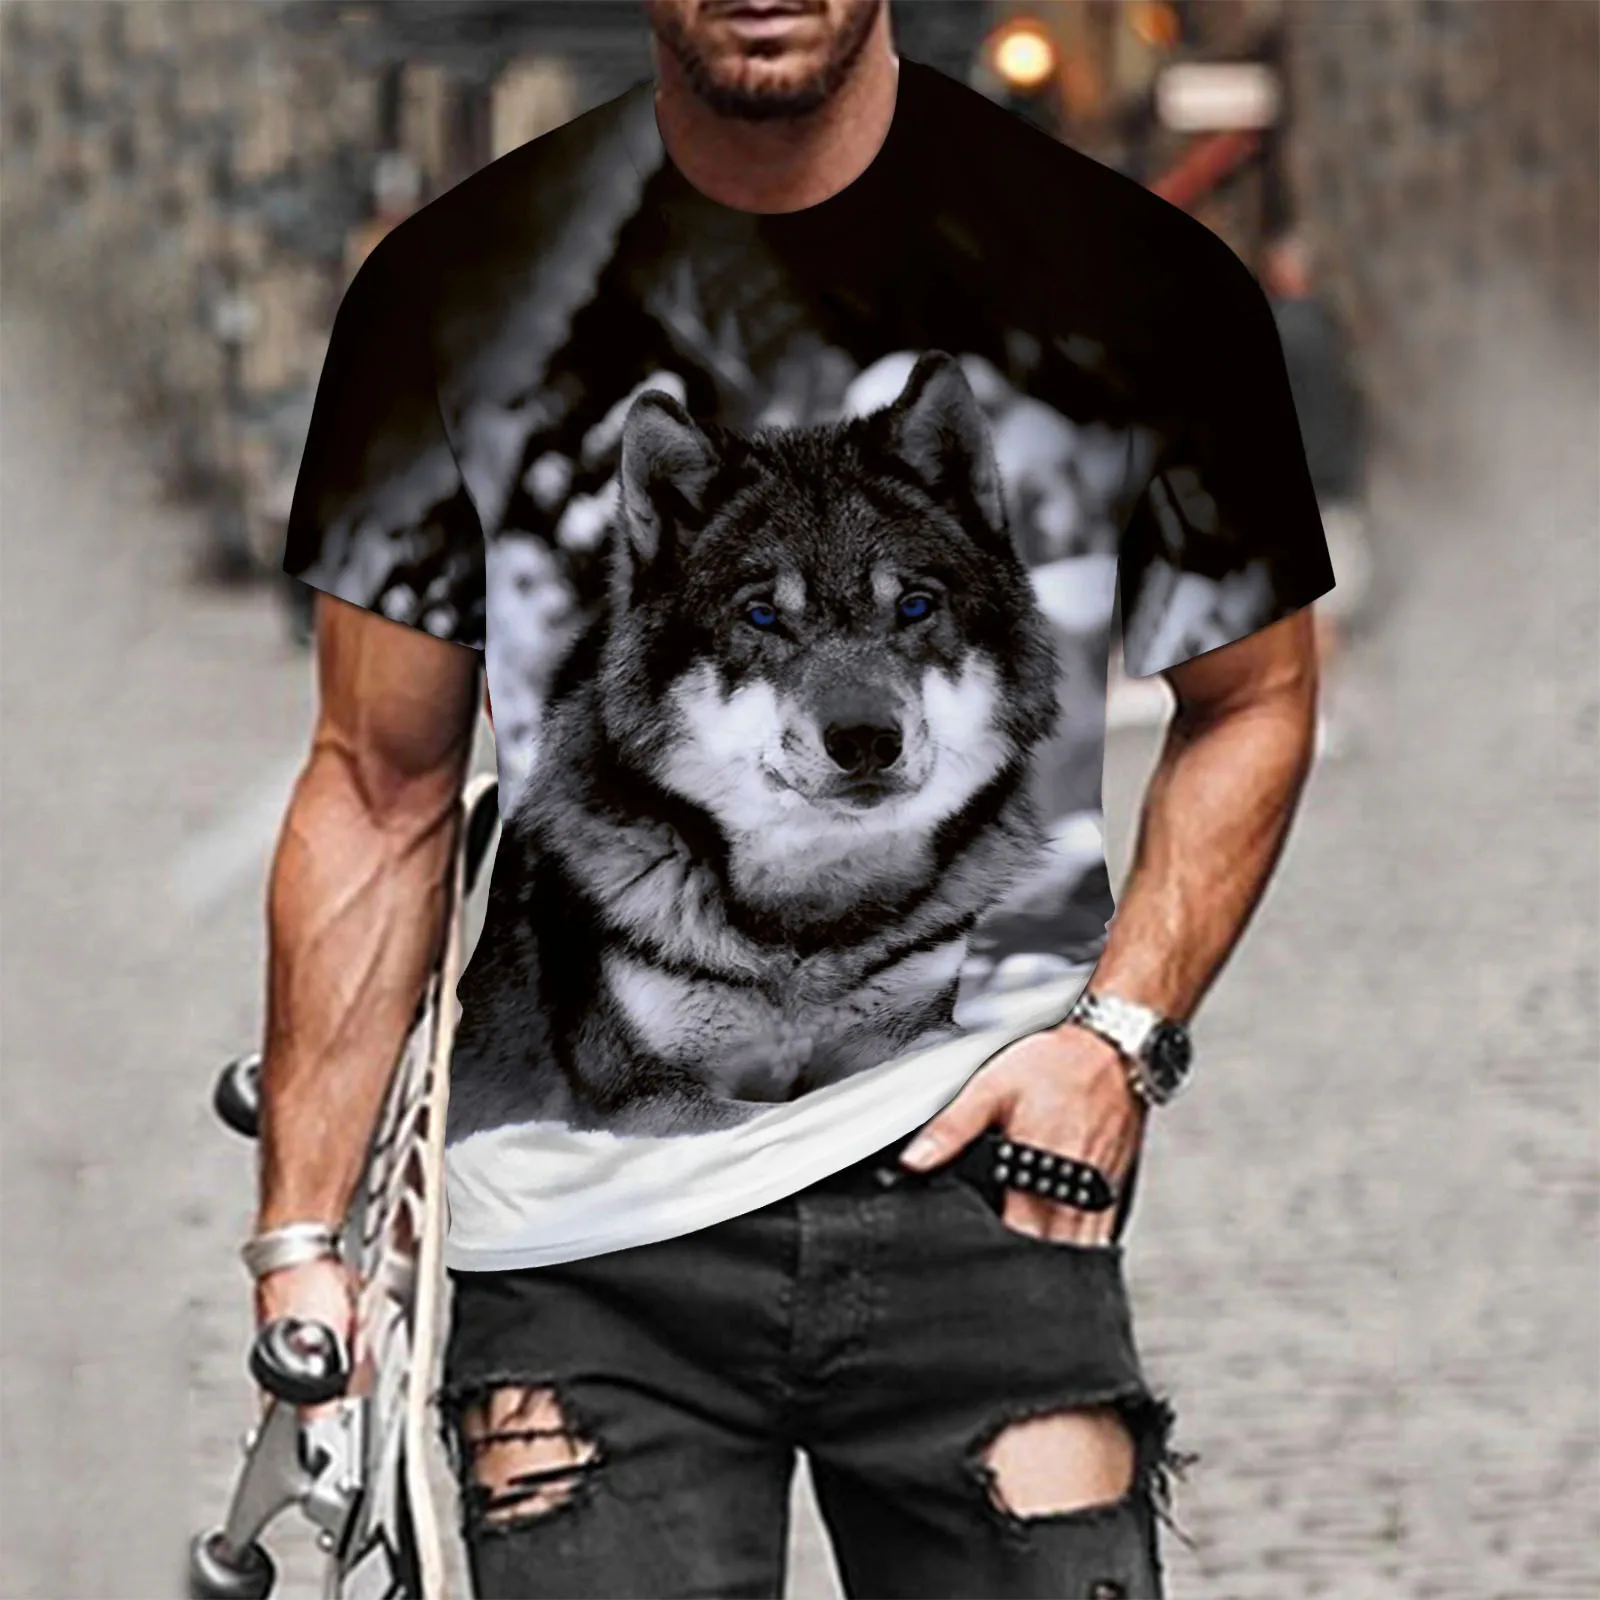 

2021 Casual Men Hip Hop T-Shirt Summer Slim wolf 3D Printed Short Sleeve T Shirt Top Blouse O Neck Tops ђболка мђжская